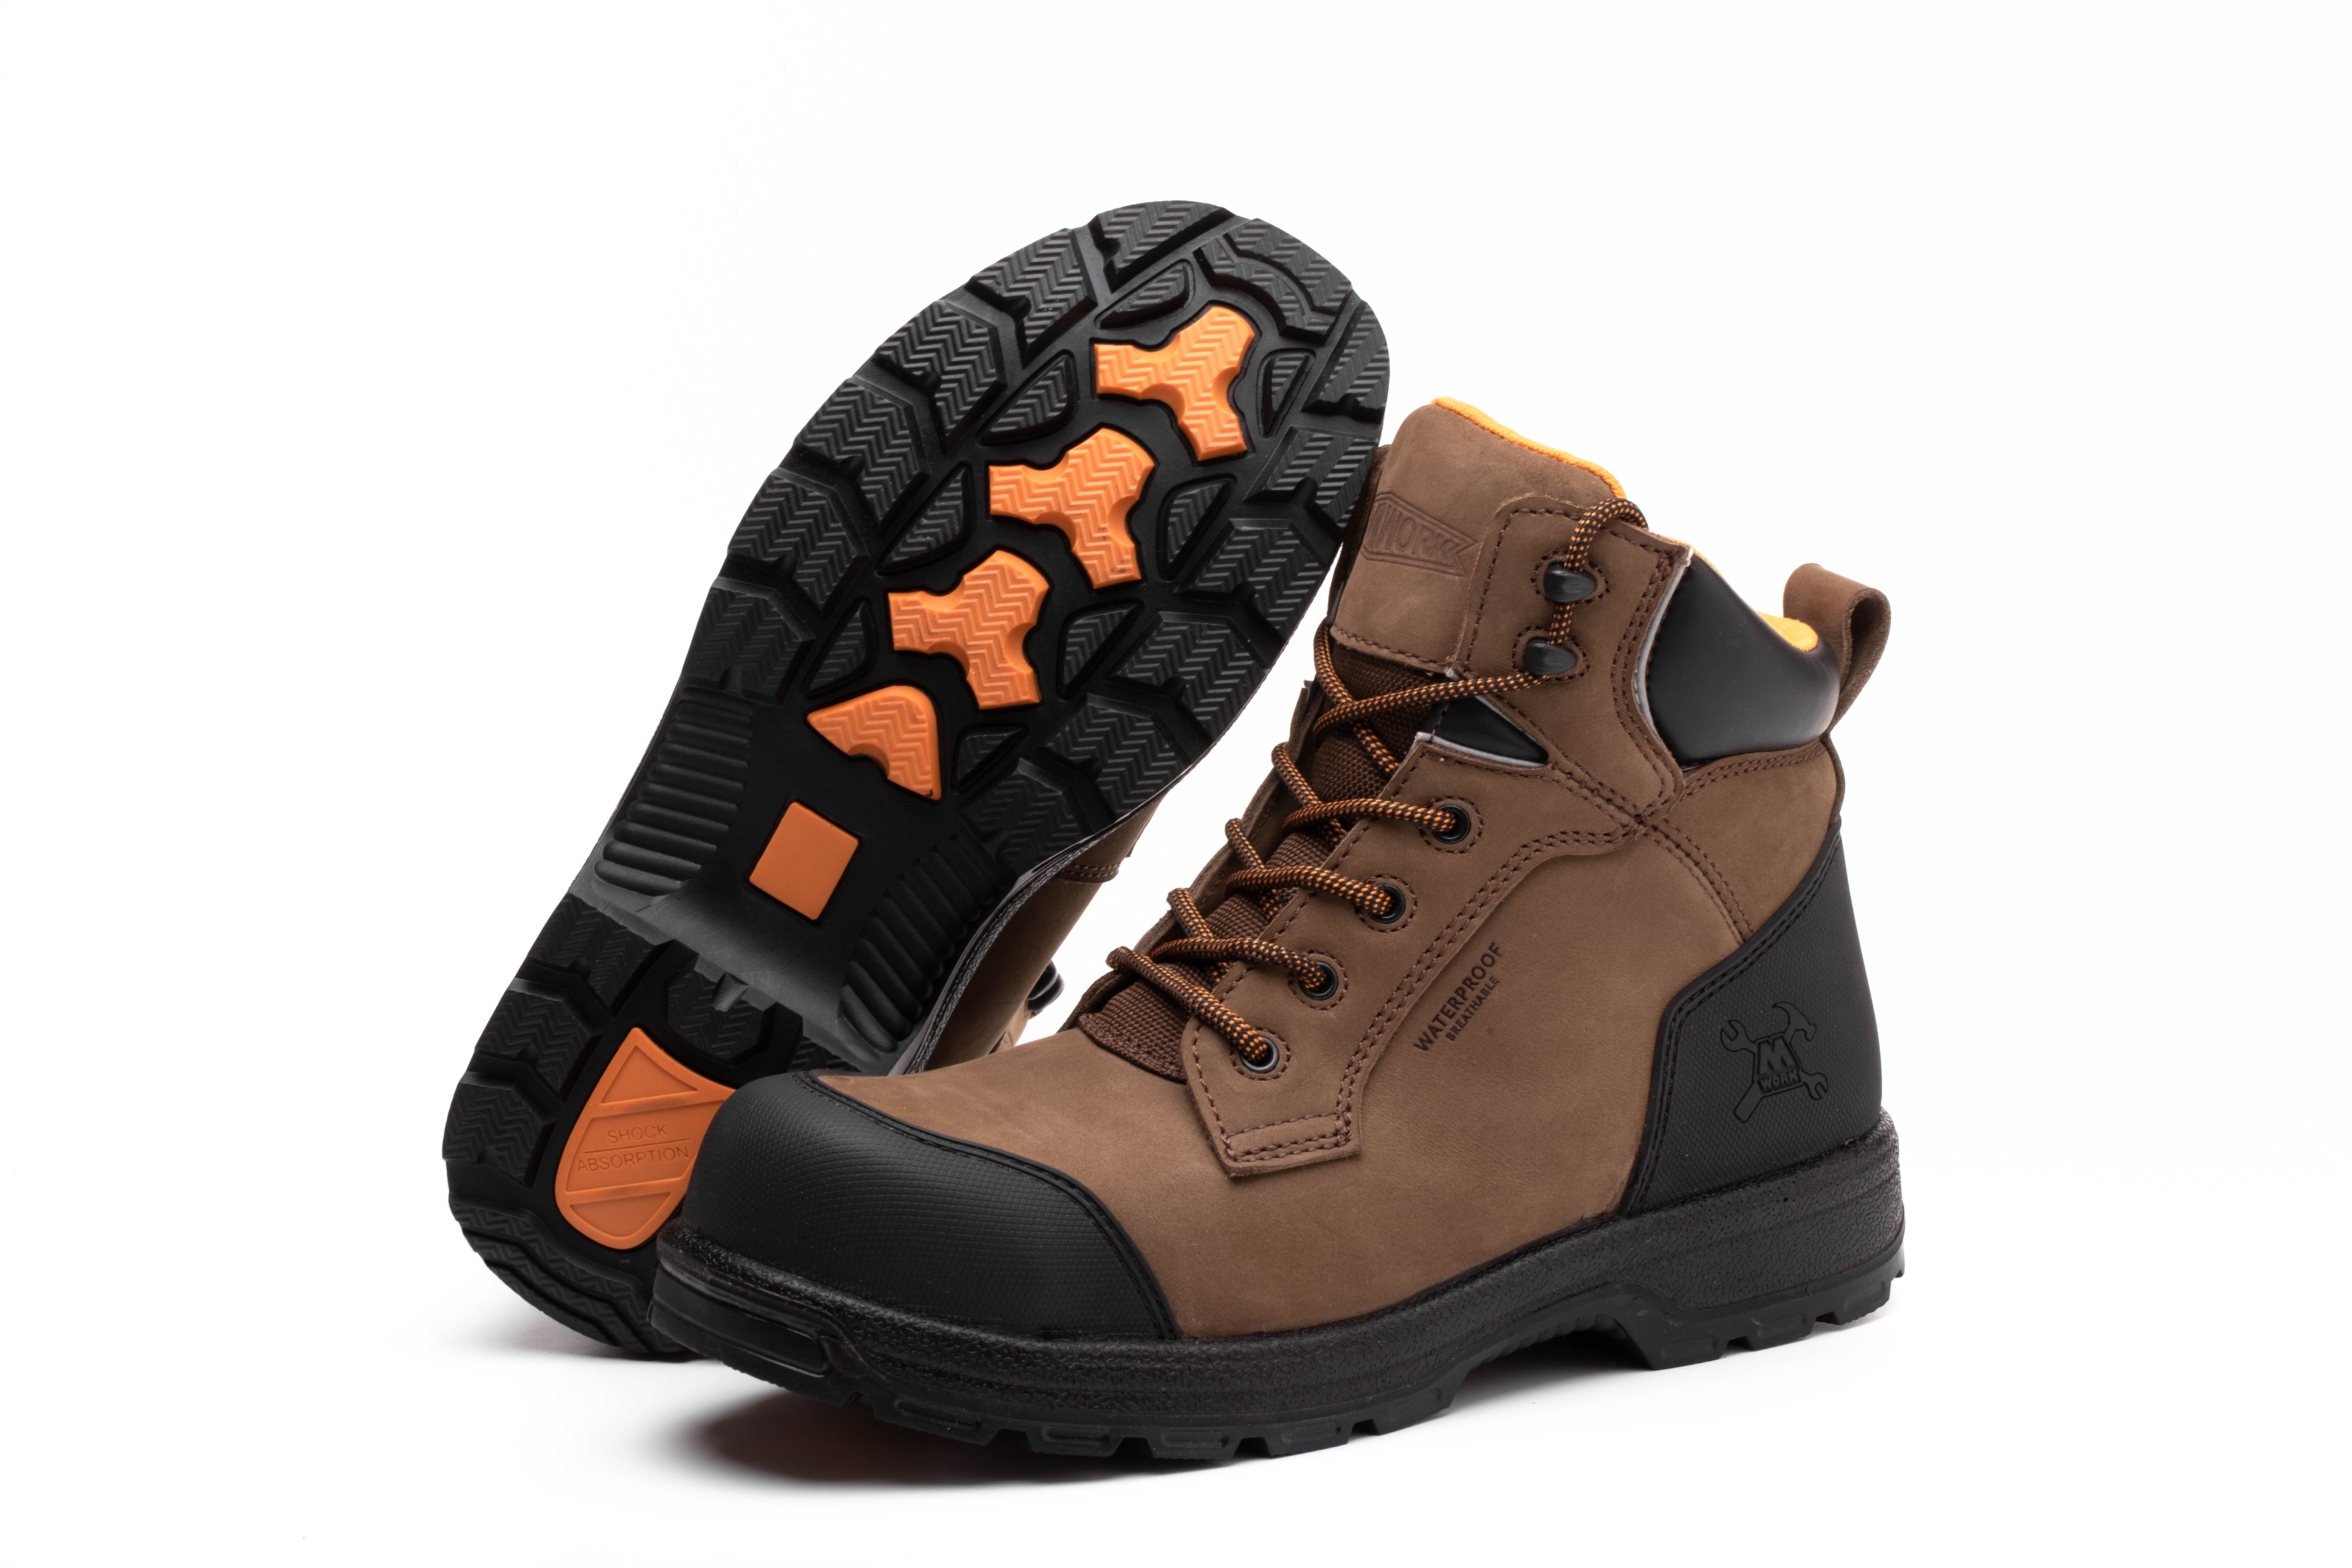 6 IN. Dk. Brown Gadsden Composite toe&Plate Waterproof No Metal Work Boot